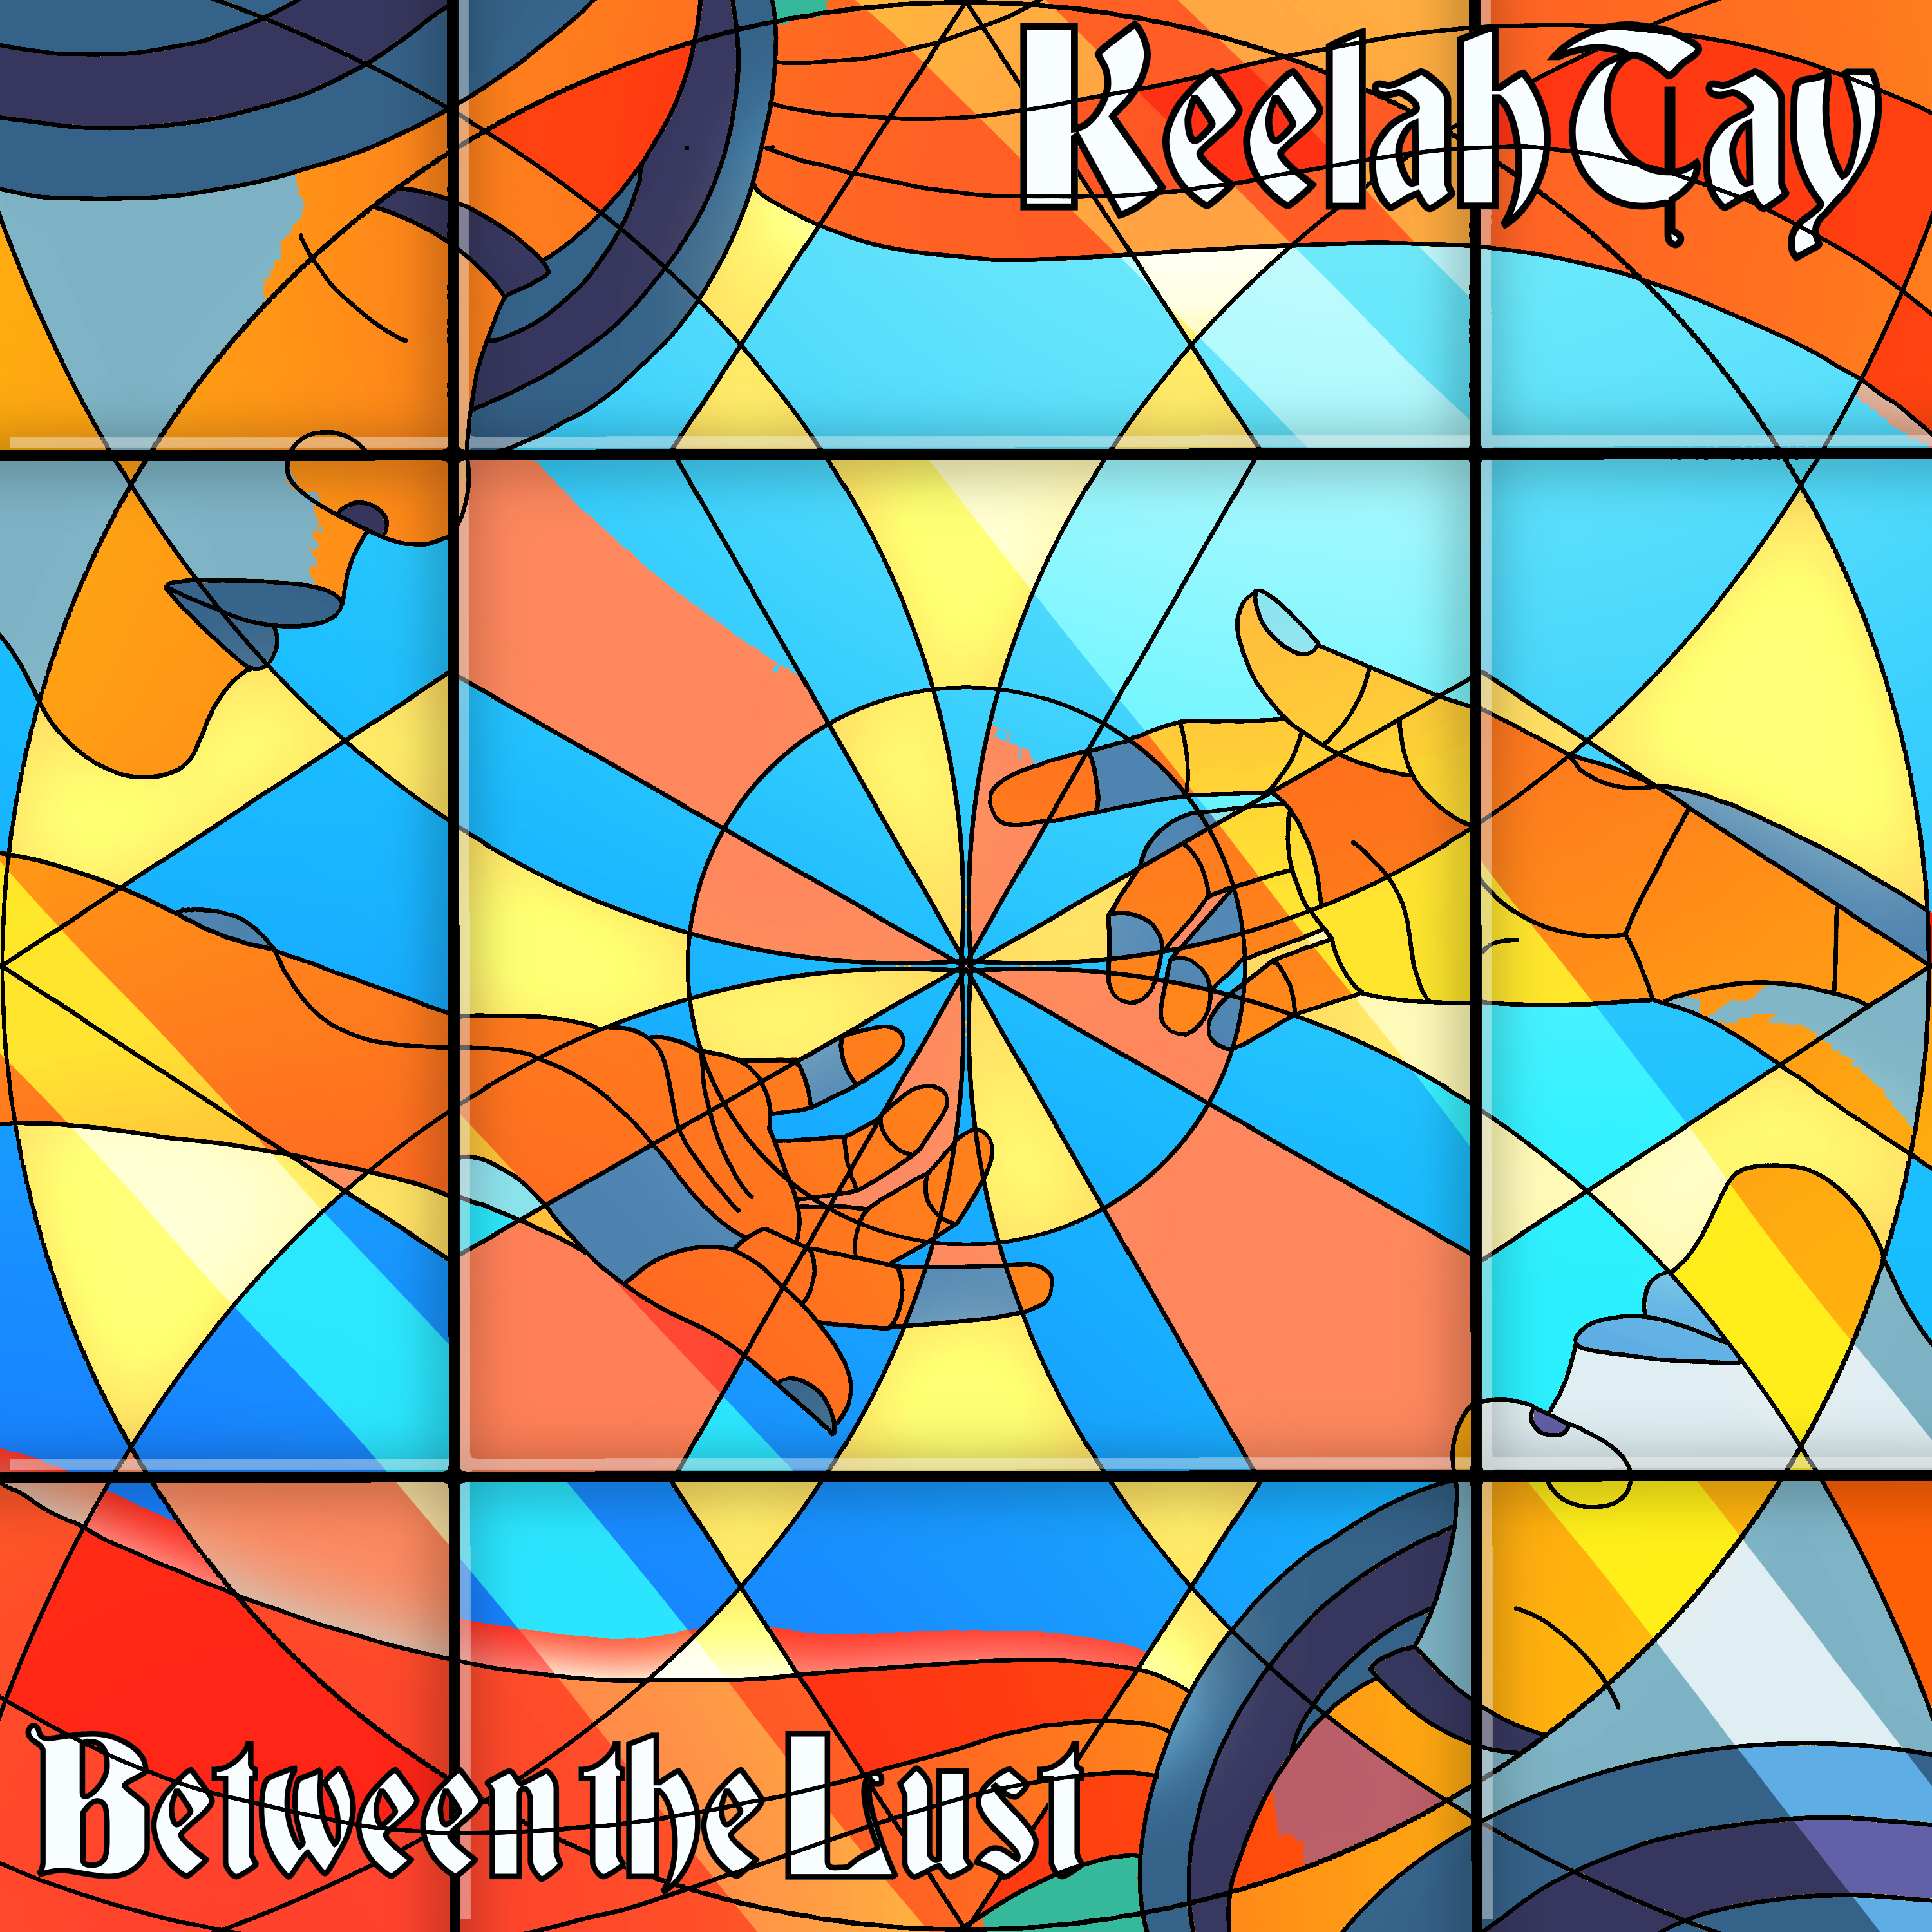 Keelah Tay – “Between the Lust”